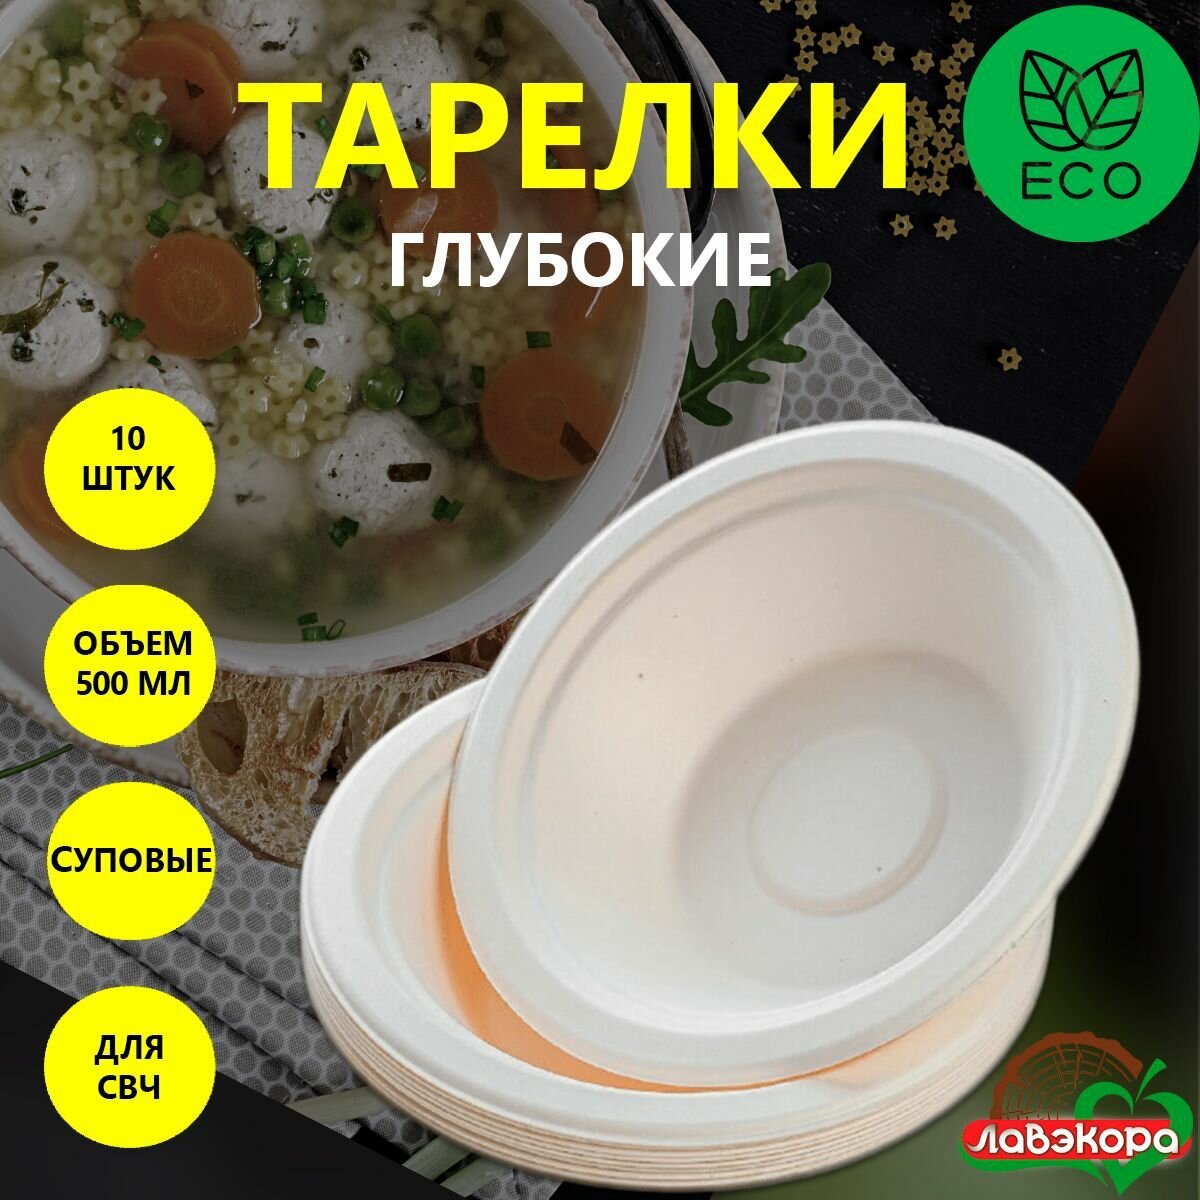 Одноразовые тарелки глубокие суповые Лавэкора, комплект 10 шт, объемом 500 мл, биоразлагаемые ЭКО из древесной целлюлозы для холодных и горячих блюд.